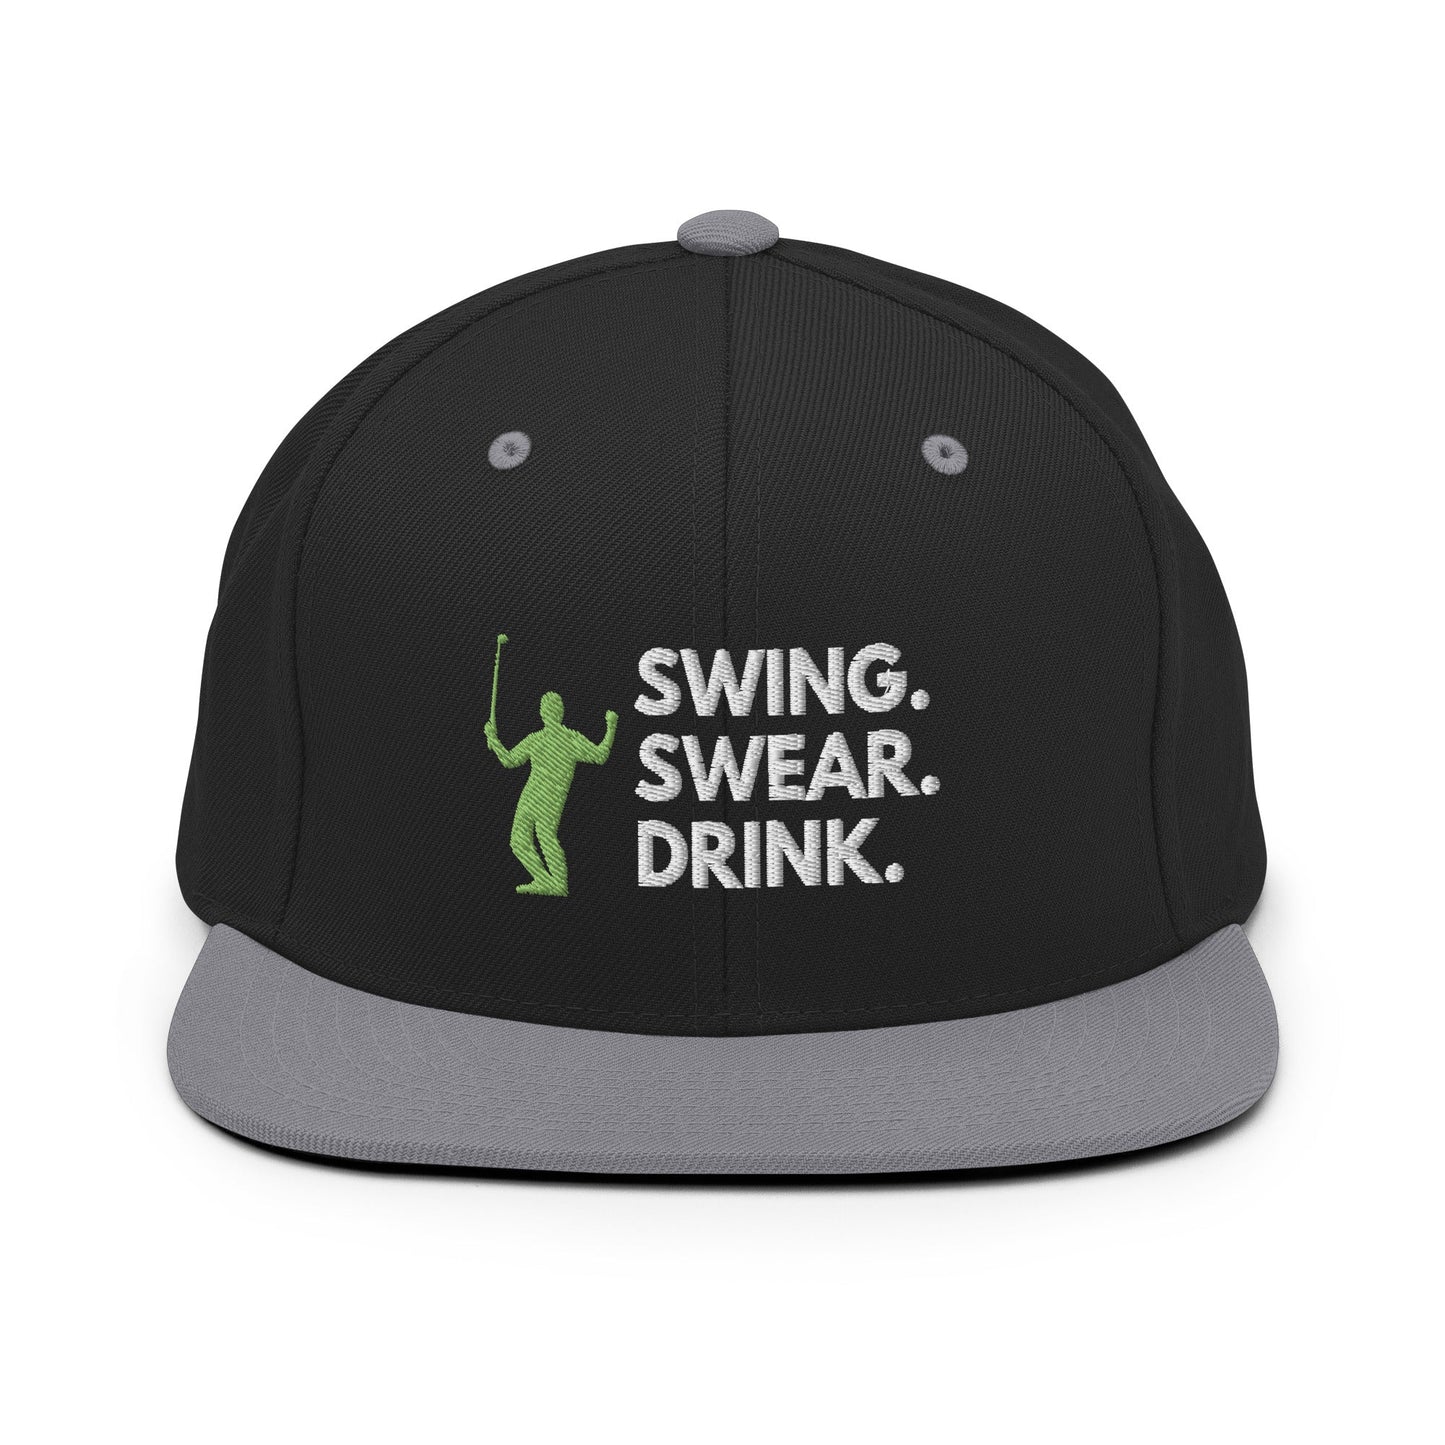 Funny Golfer Gifts  Snapback Hat Black/ Silver Swing. Swear. Drink Snapback Hat